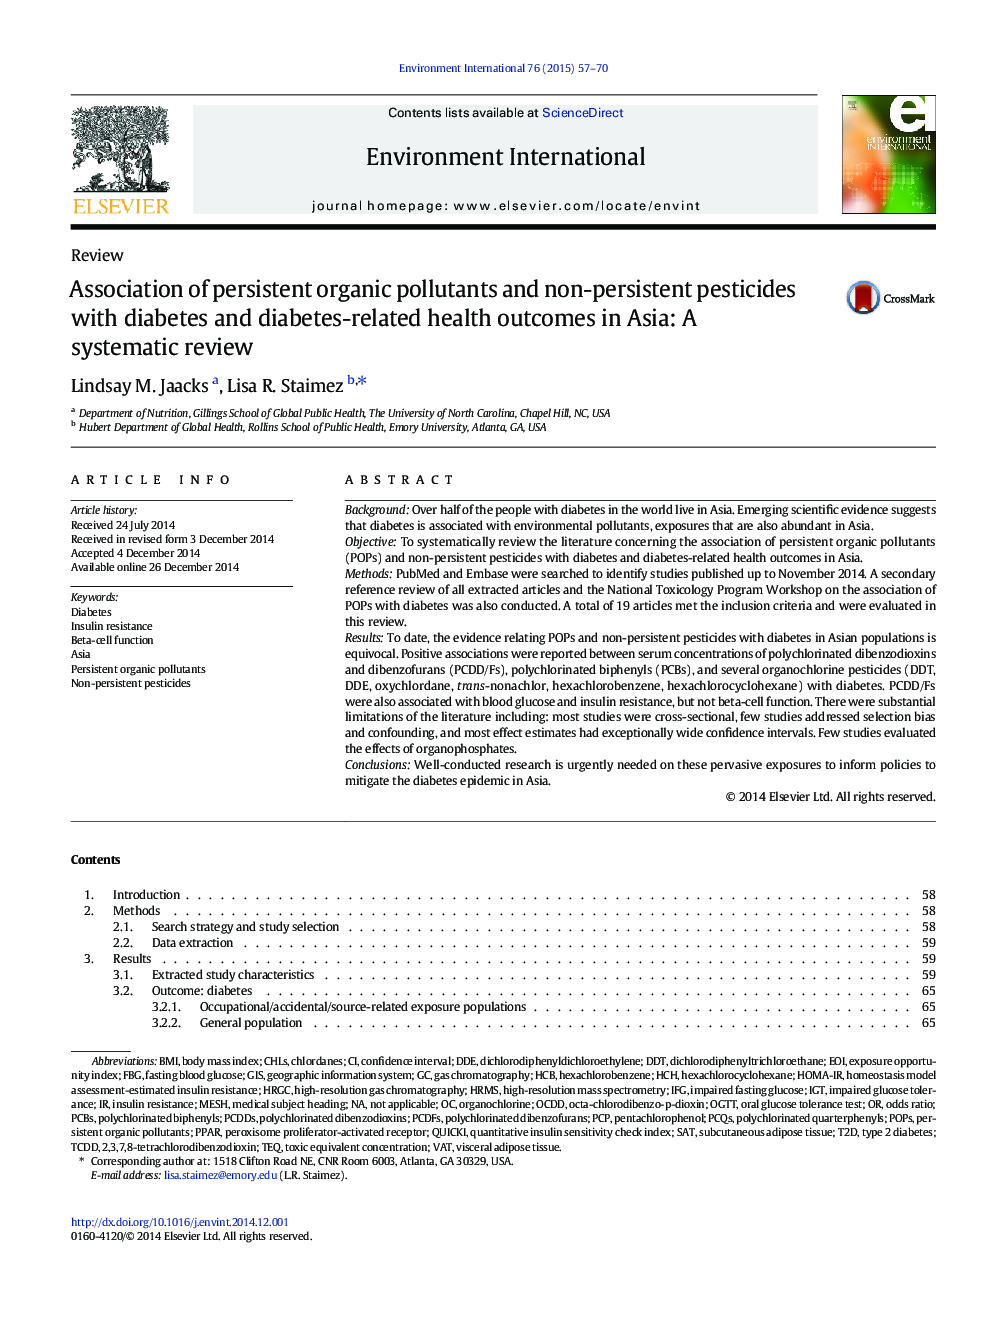 بررسی ترکیب آلودگی های پایدار و آفت کش های غیر پایدار با دیابت و نتایج سلامت مربوط به دیابت در آسیا: بررسی سیستماتیک 